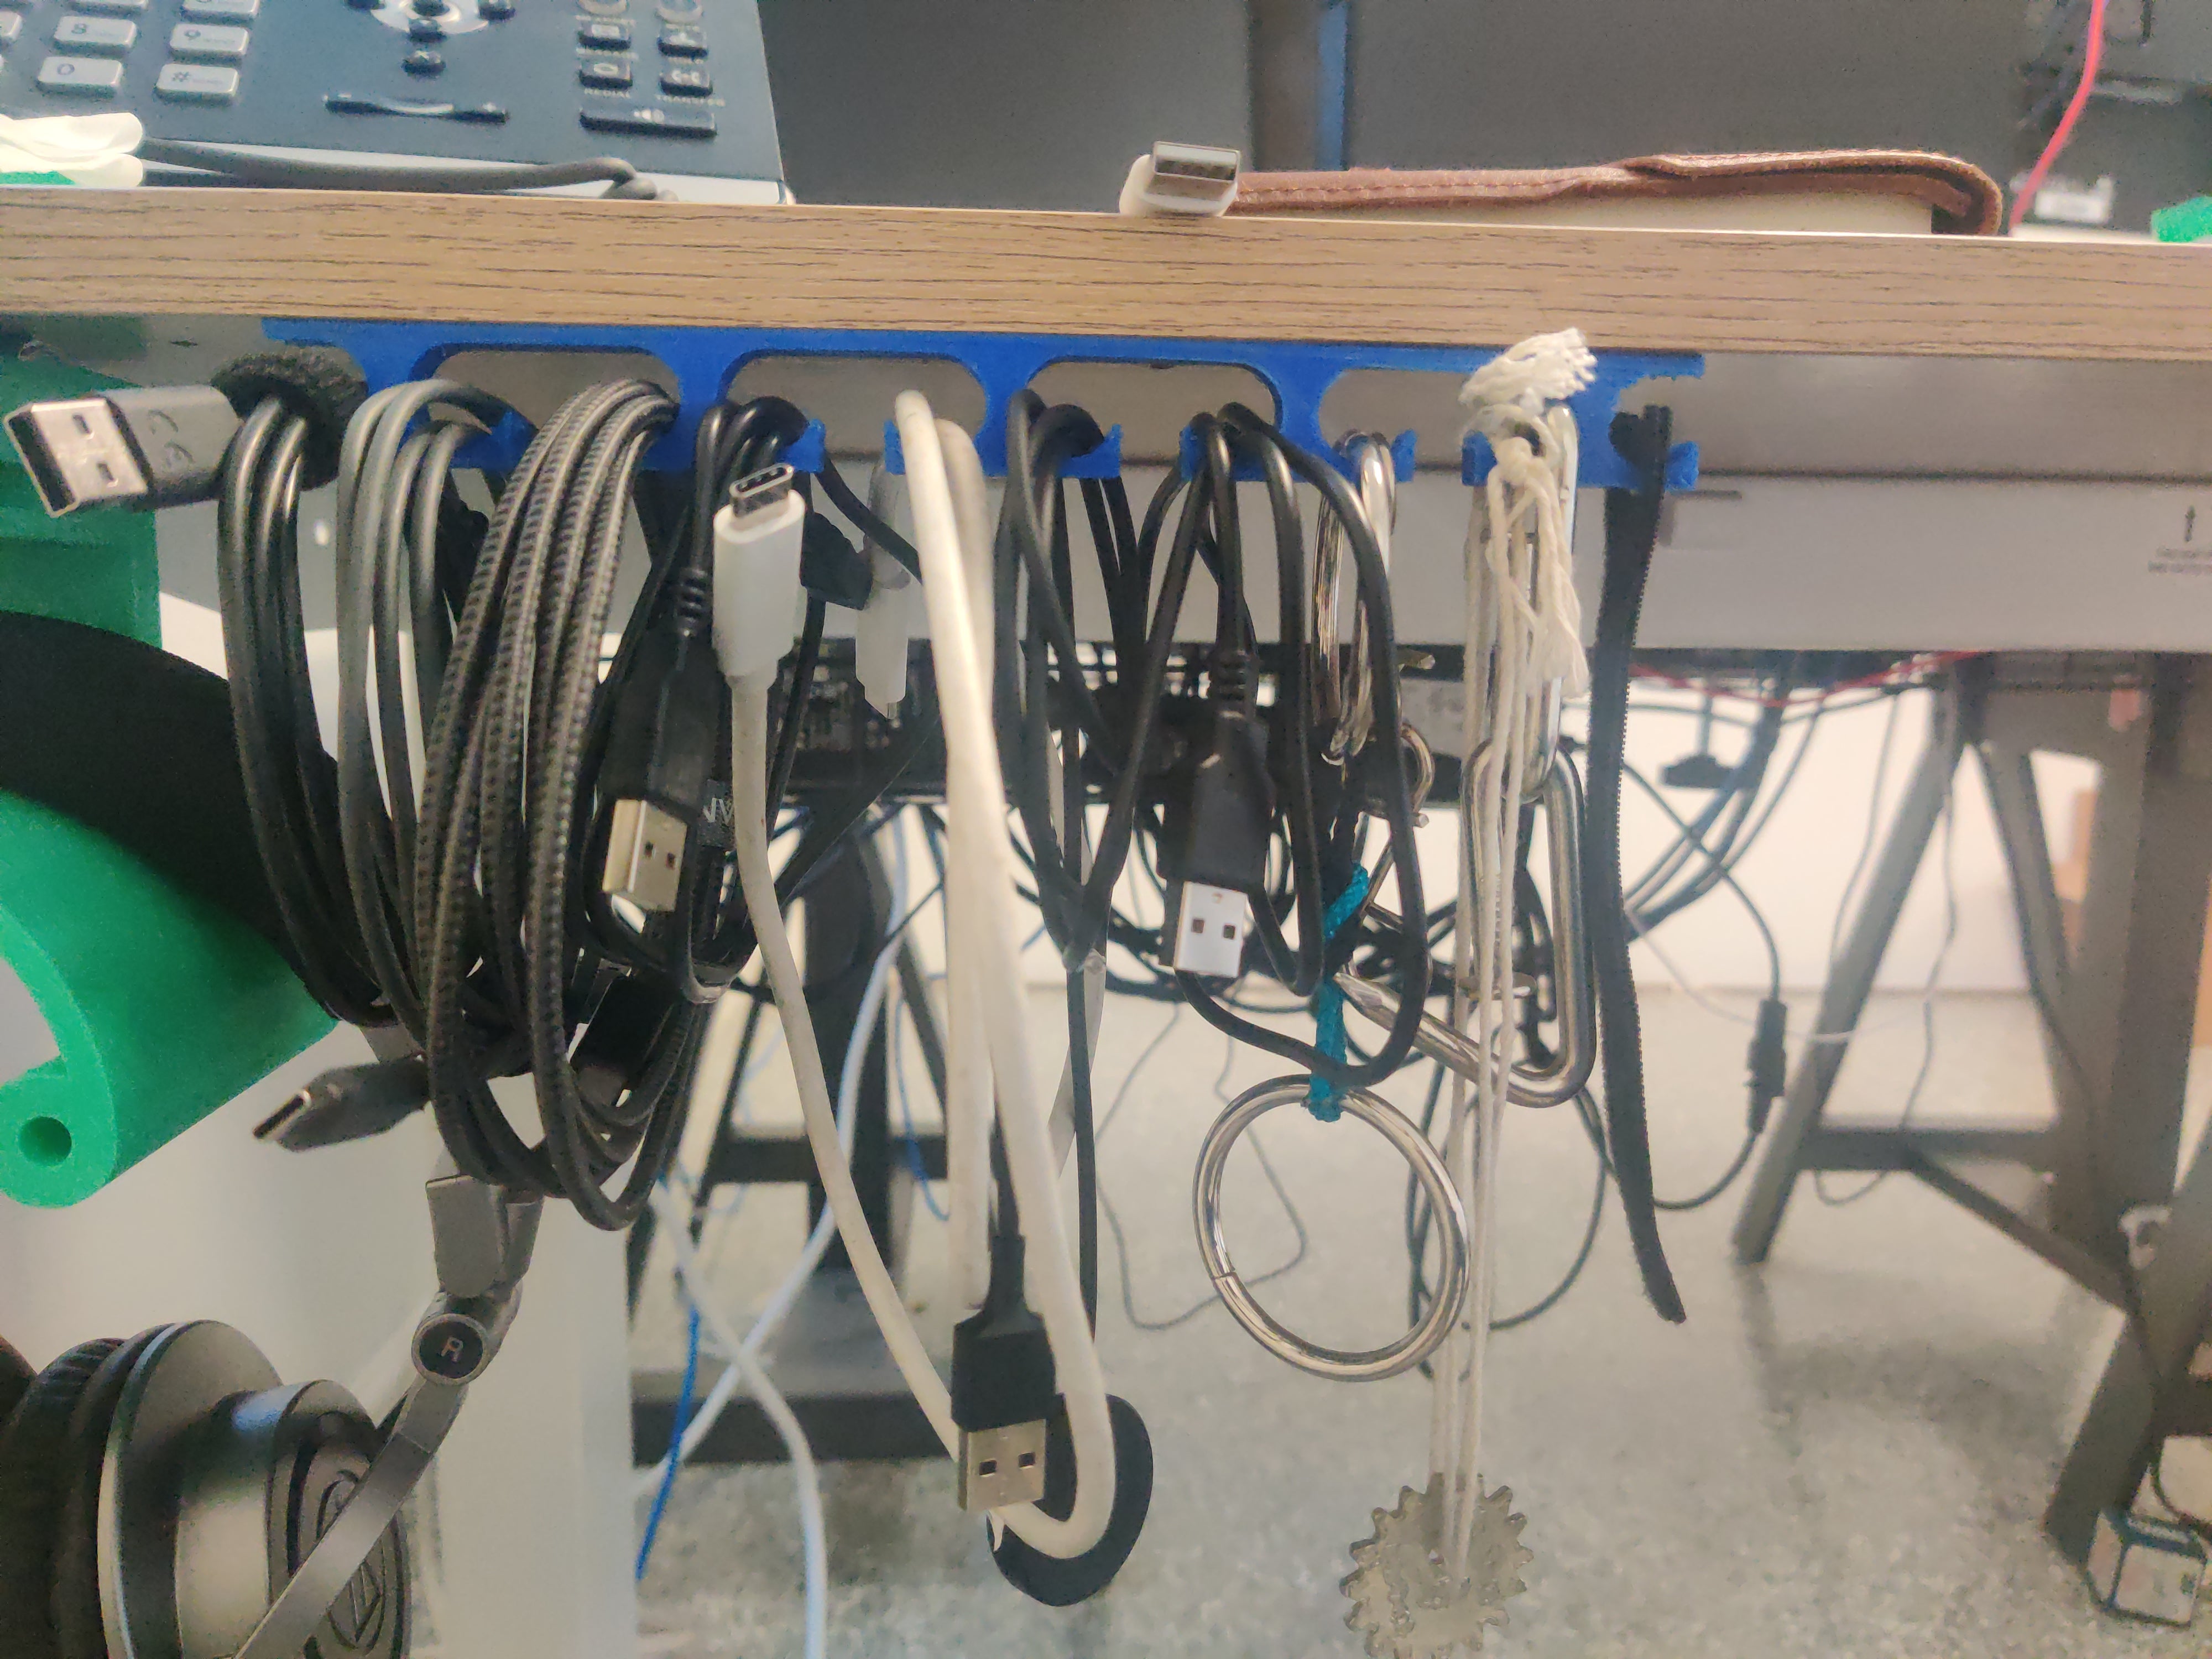 USB-kabelopbergsysteem voor je bureaublad